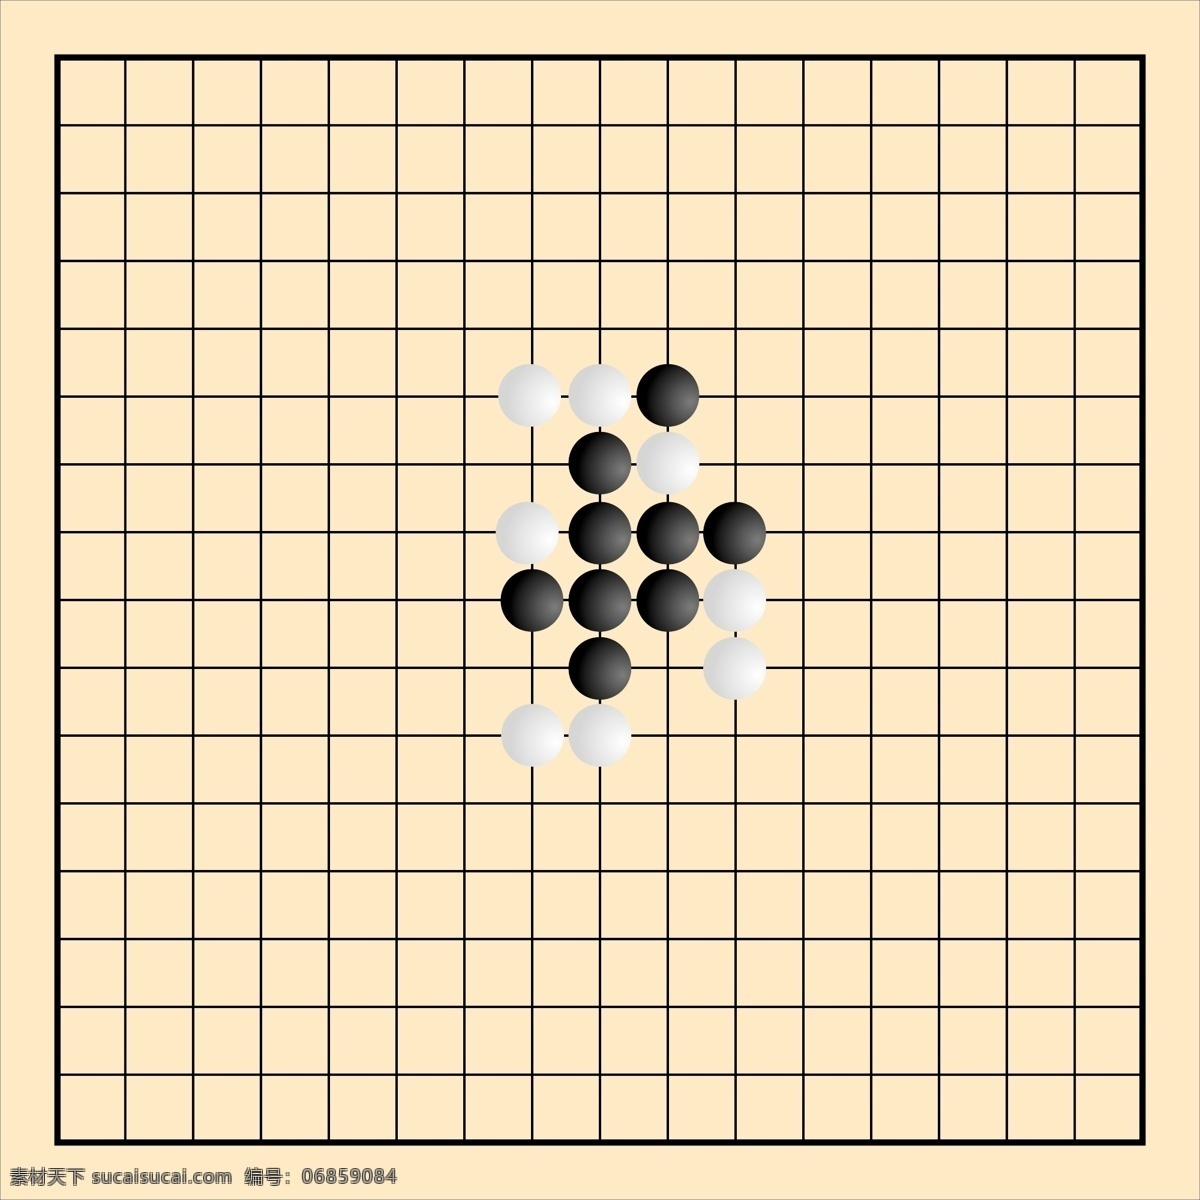 五子棋 游戏 娱乐 棋牌 文化艺术 传统文化 棋牌类 矢量图库